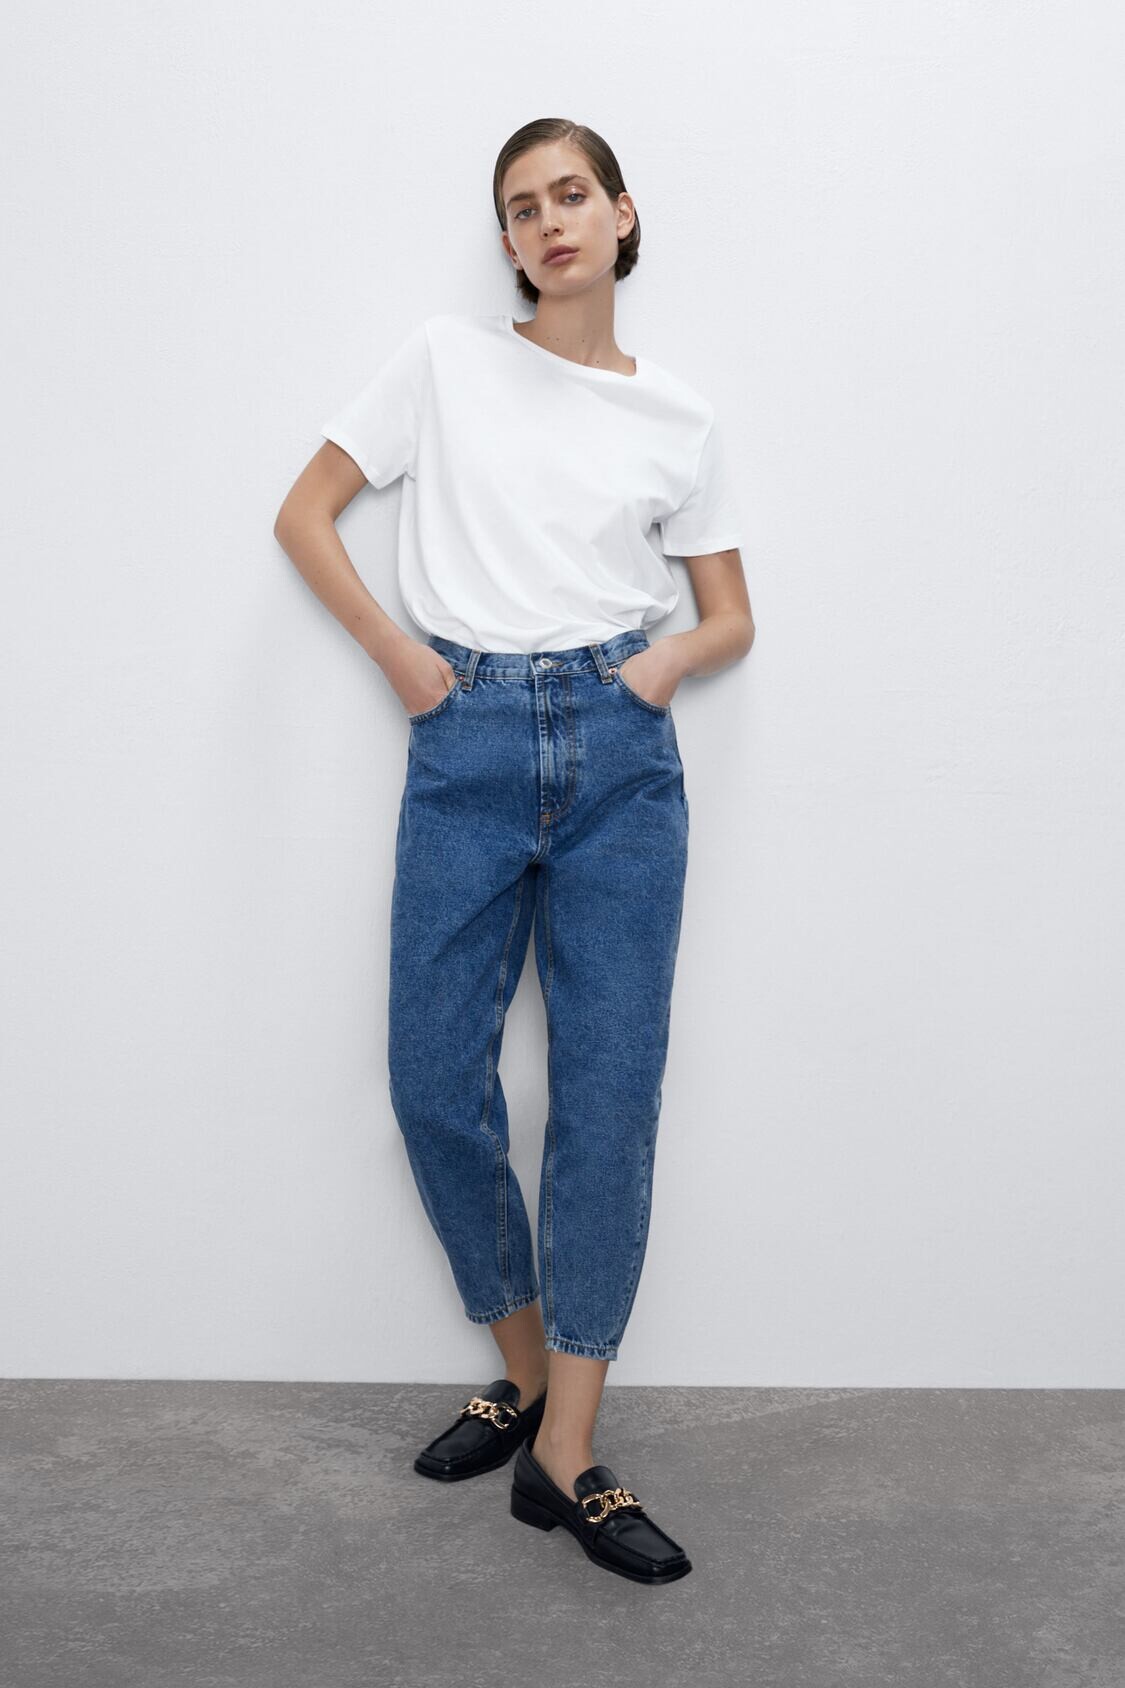 Zara Models - Model ID - Bellazon